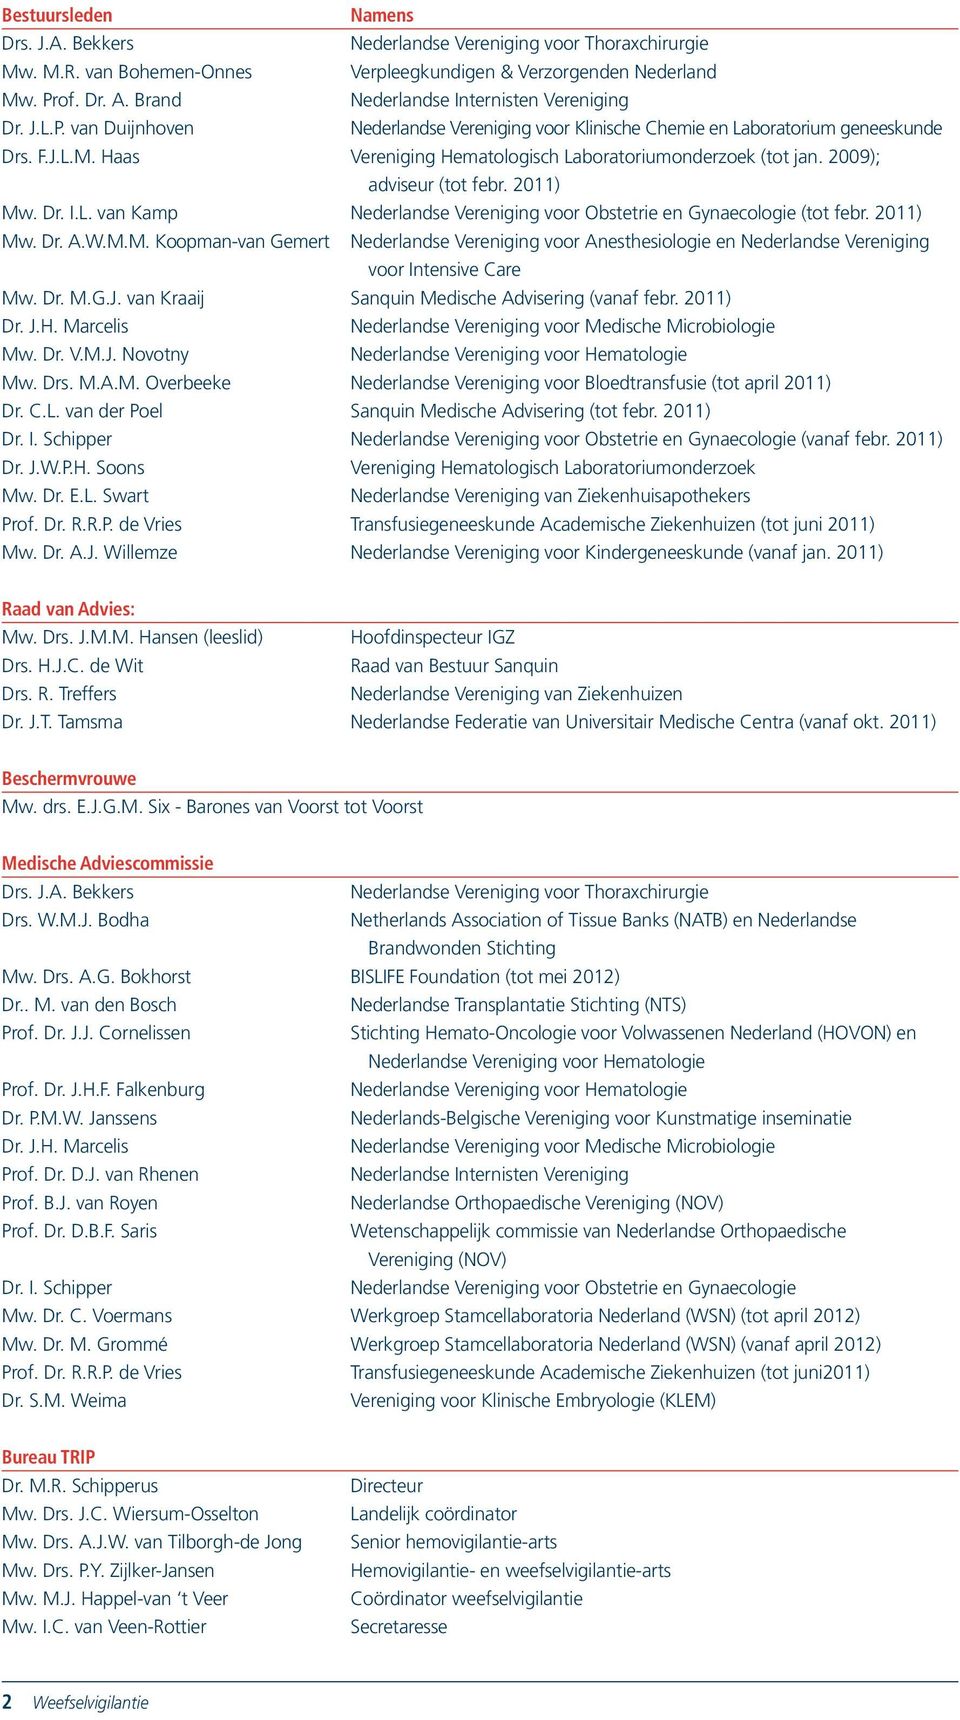 Haas Vereniging Hematologisch Laboratoriumonderzoek (tot jan. 2009); adviseur (tot febr. 2011) Mw. Dr. I.L. van Kamp Nederlandse Vereniging voor Obstetrie en Gynaecologie (tot febr. 2011) Mw. Dr. A.W.